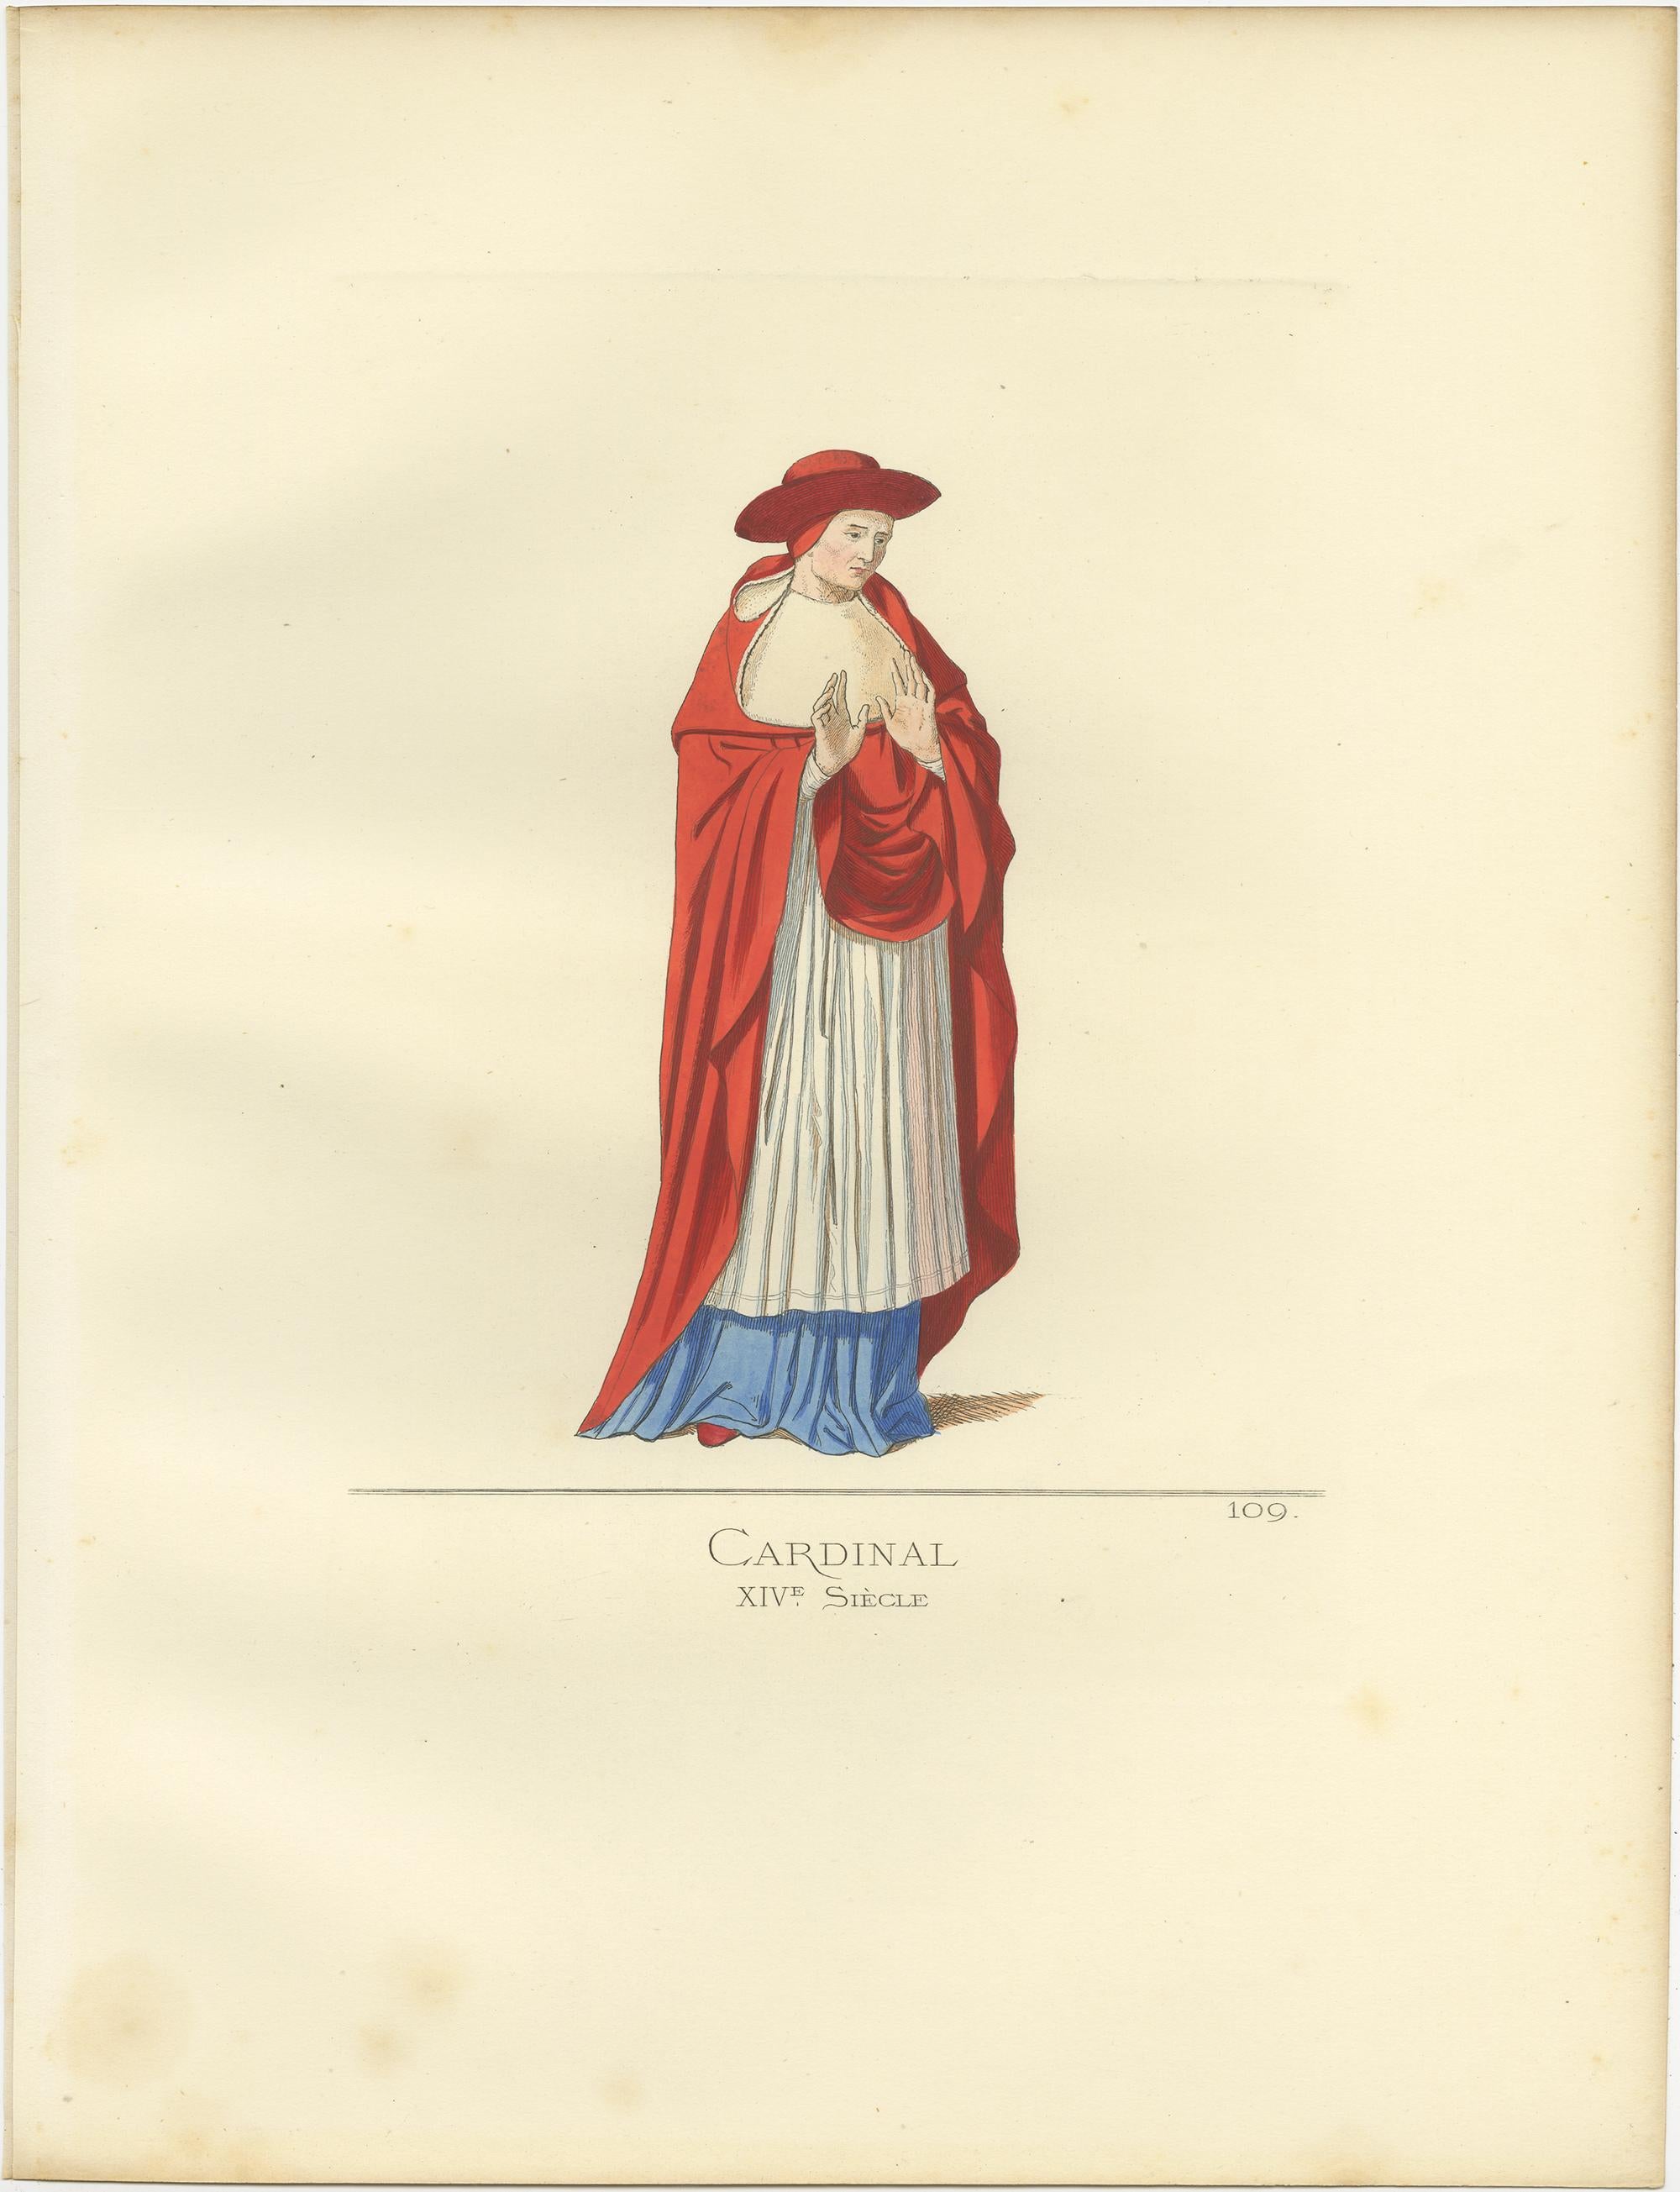 Antique print titled ‘Cardinal, XIVe Siecle.’ Original antique print of a cardinal, Italy, 14th century. This print originates from 'Costumes historiques de femmes du XIII, XIV et XV siècle' by C. Bonnard. Published, 1860.